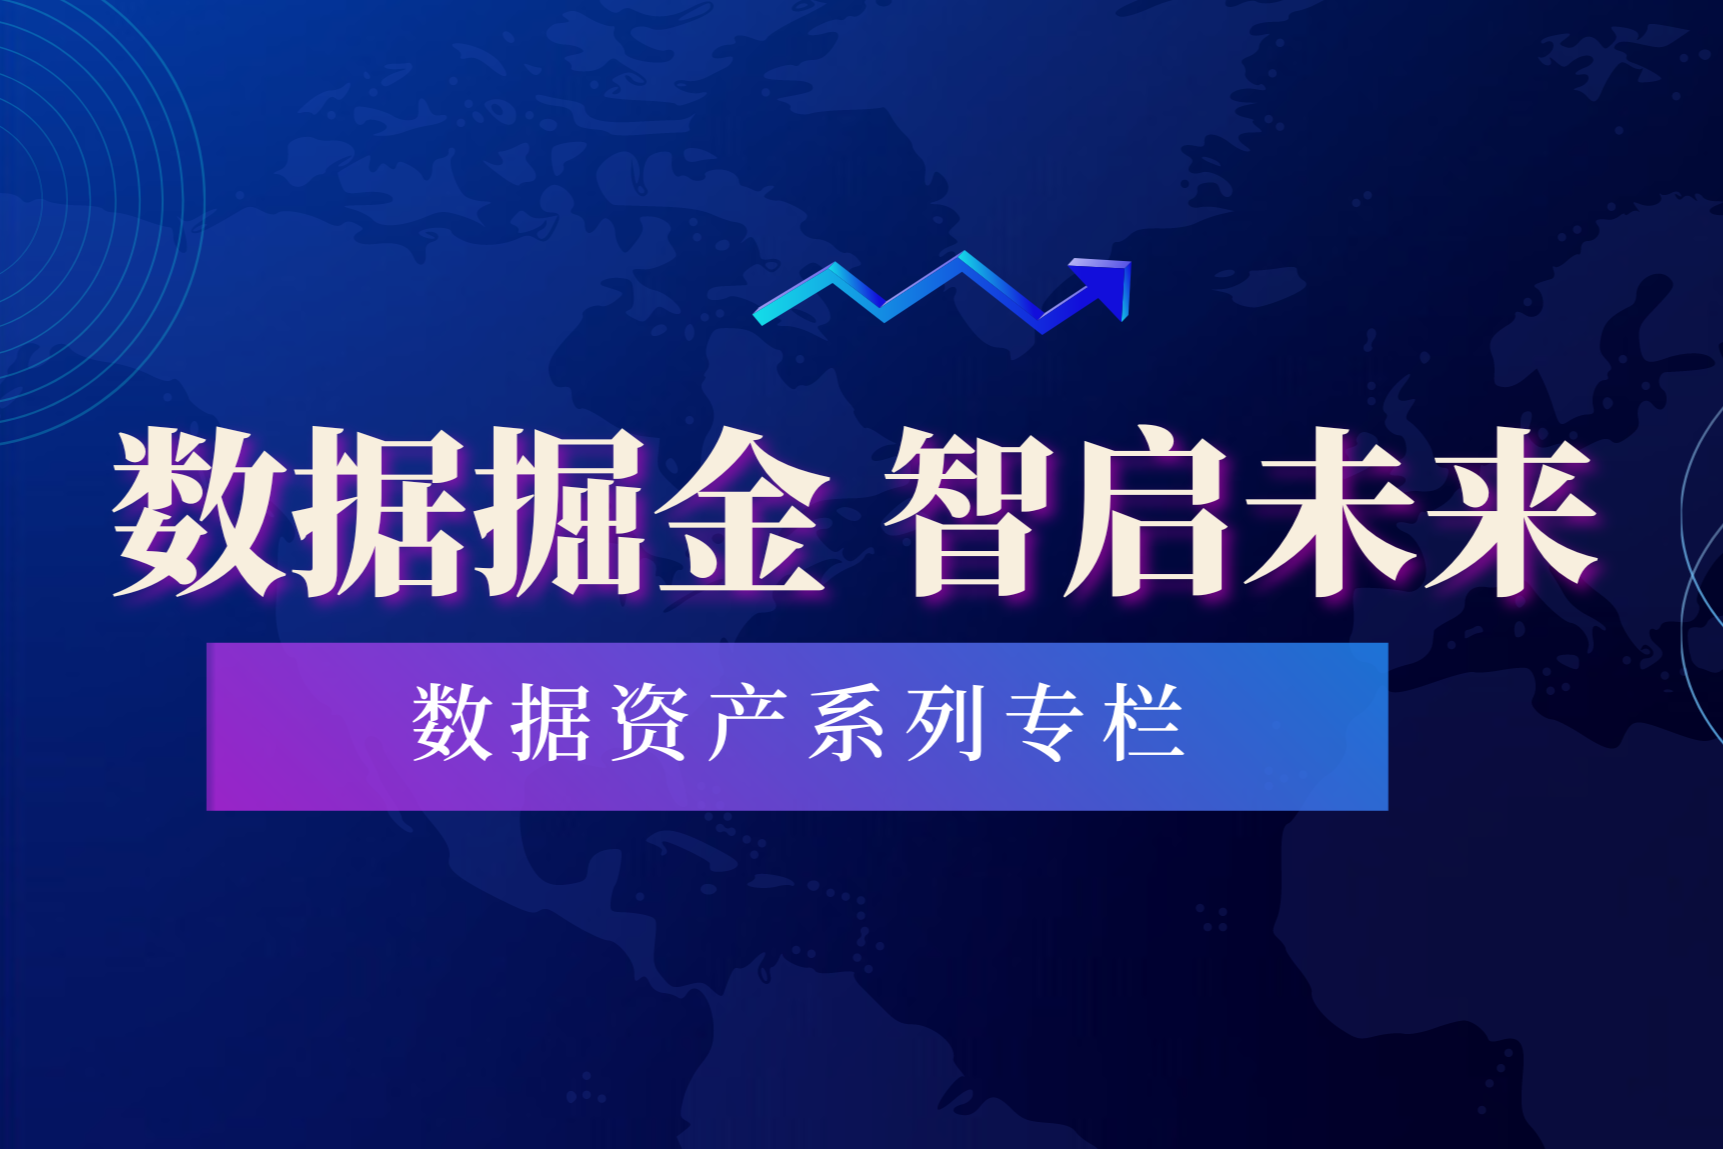 蓝紫色世界统计日科技小节日节日宣传中文微信公众号封面 (1)_20240712_17207539844586980